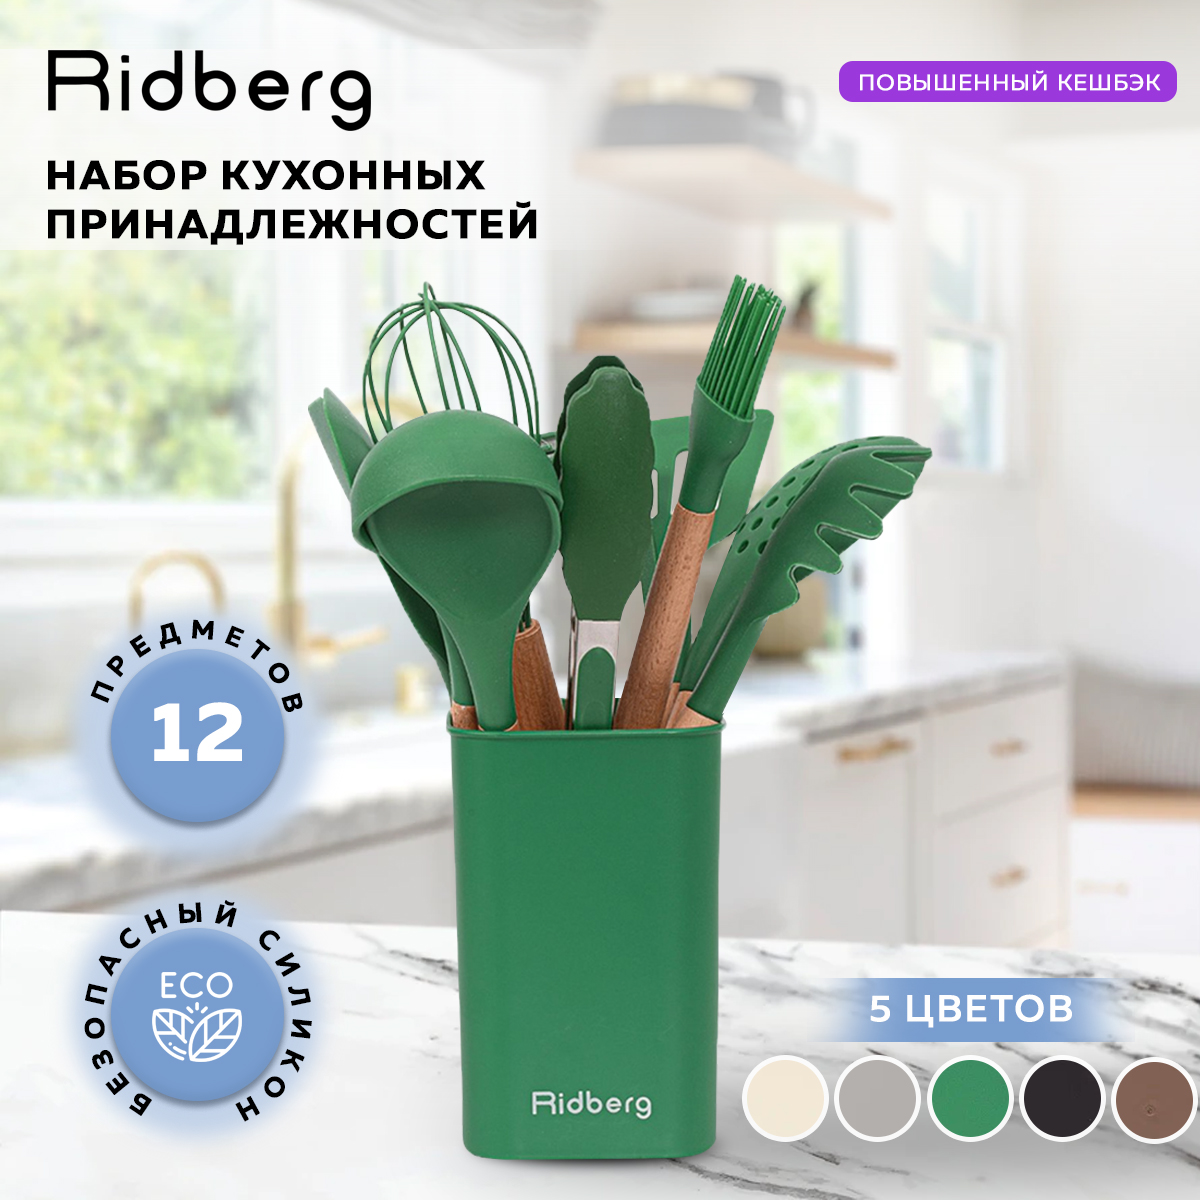 Набор кухонных принадлежностей Ridberg 12 шт Green